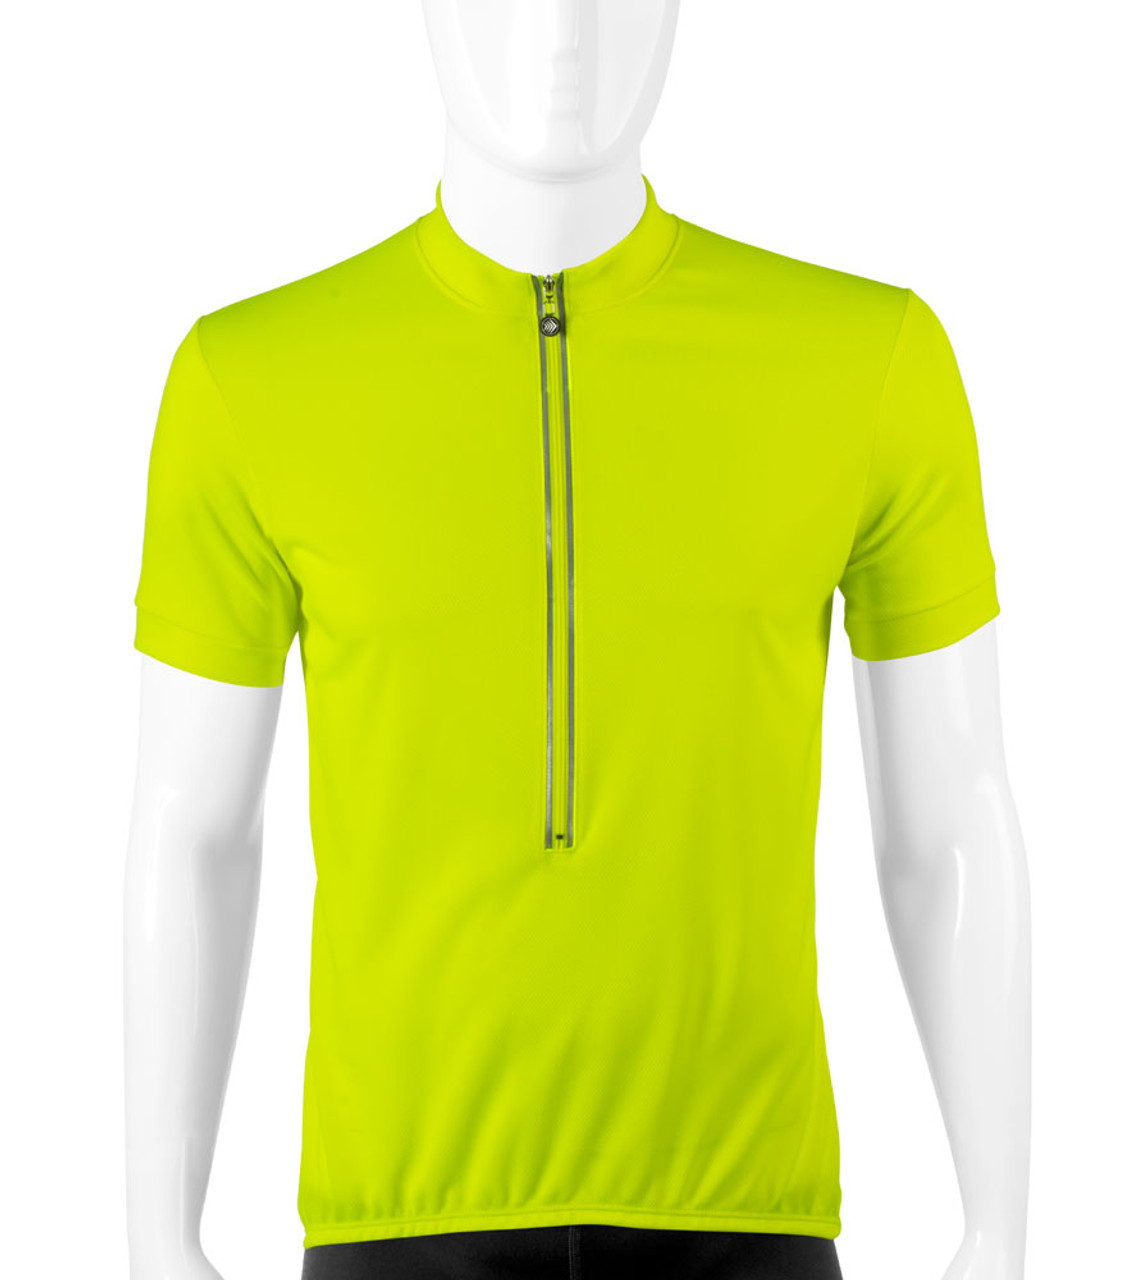 yellow cycling shirt